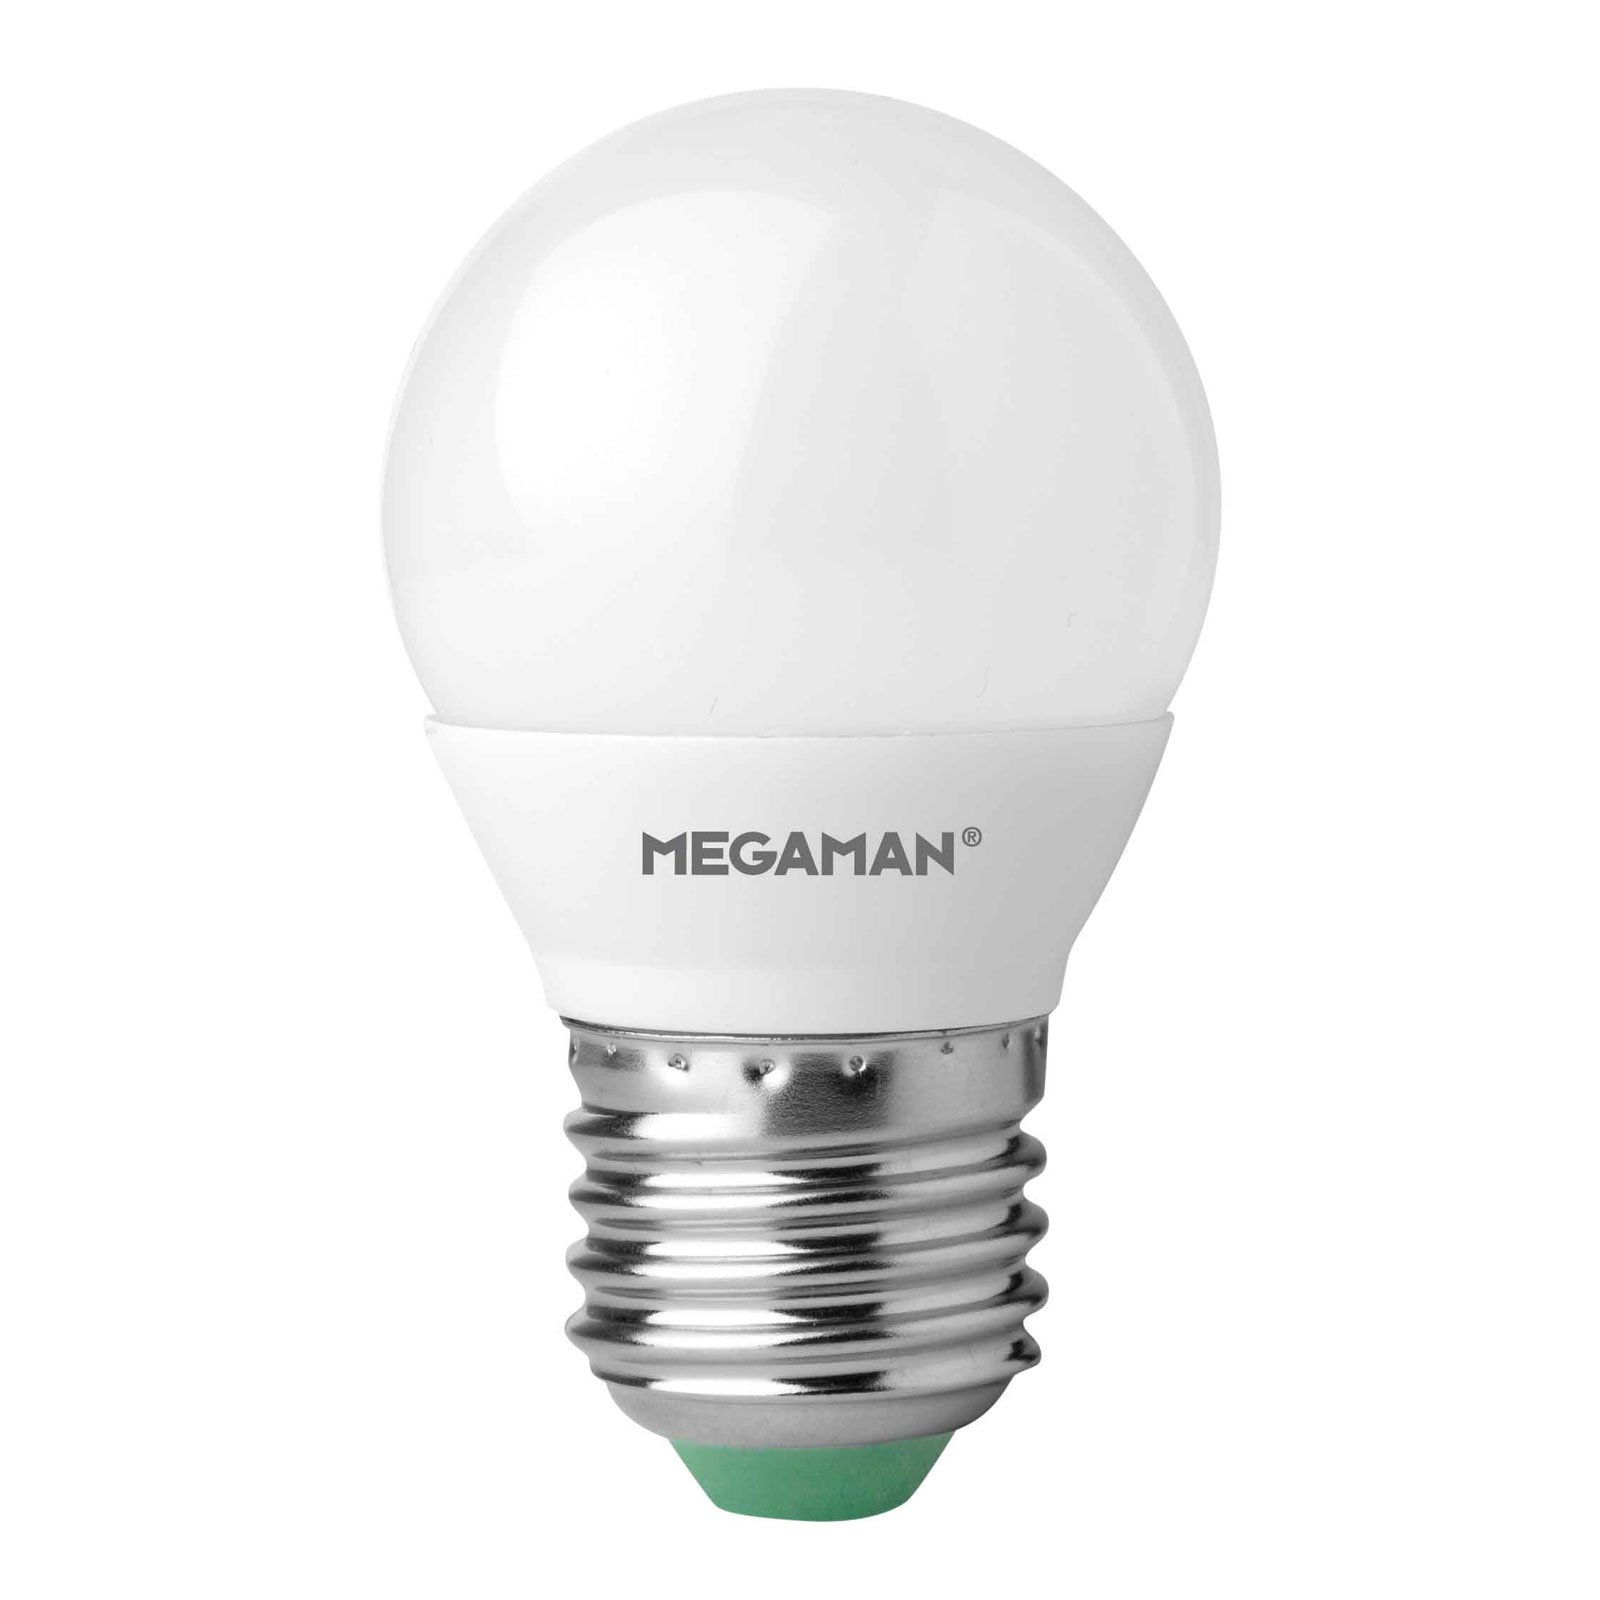 LED-lampe E27 Miniglobe 5,5W, varm hvid